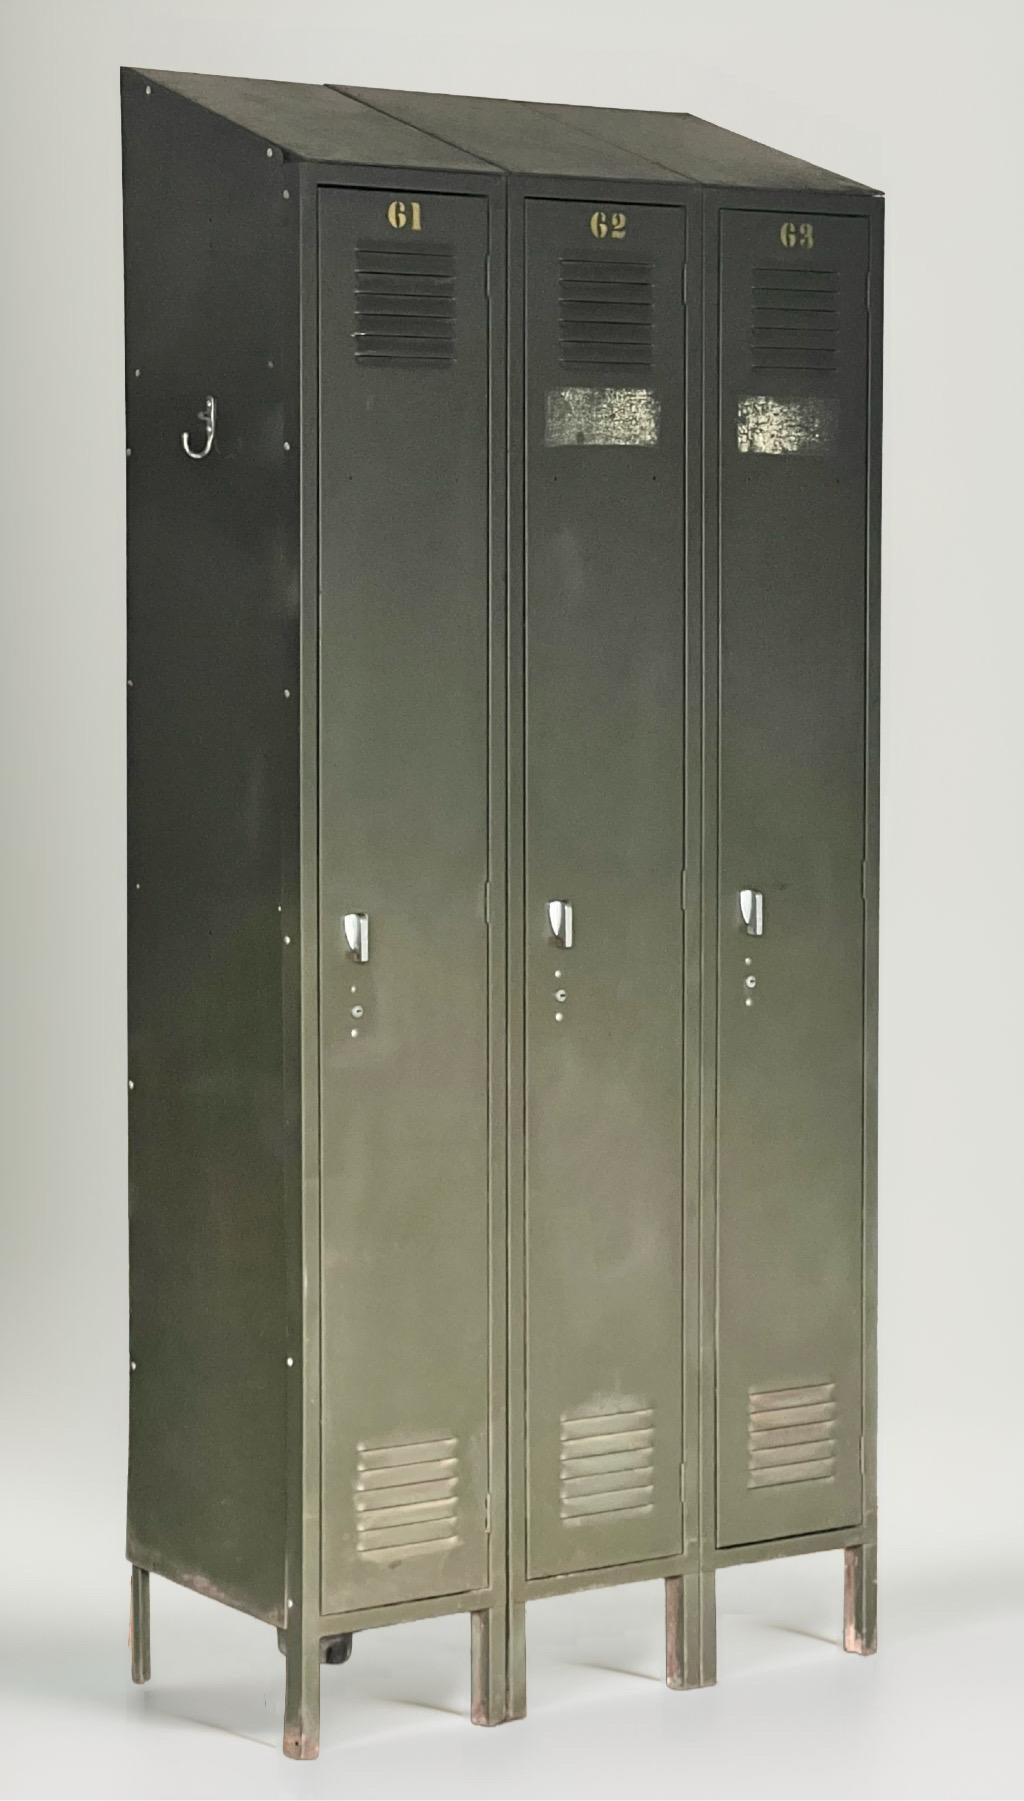 Casier industriel en acier de couleur vert armée de Lyon Metal, C.C. 1950.

Une seule unité autonome de trois casiers en acier émaillé de gros calibre fabriquée par le principal fabricant américain de produits de stockage industriels en acier depuis